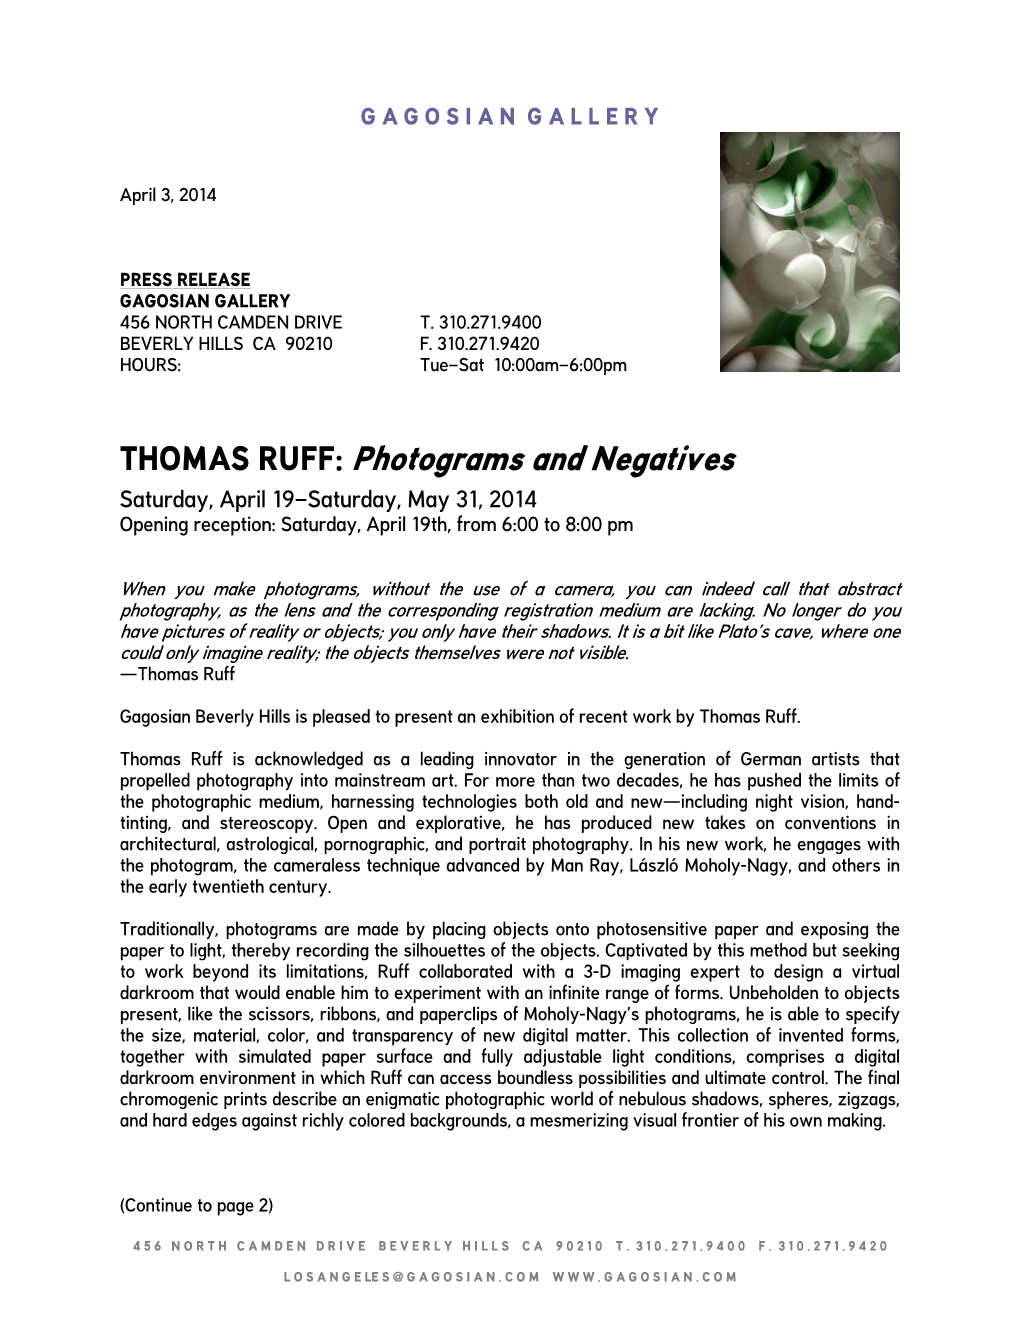 THOMAS RUFF: Photograms and Negatives